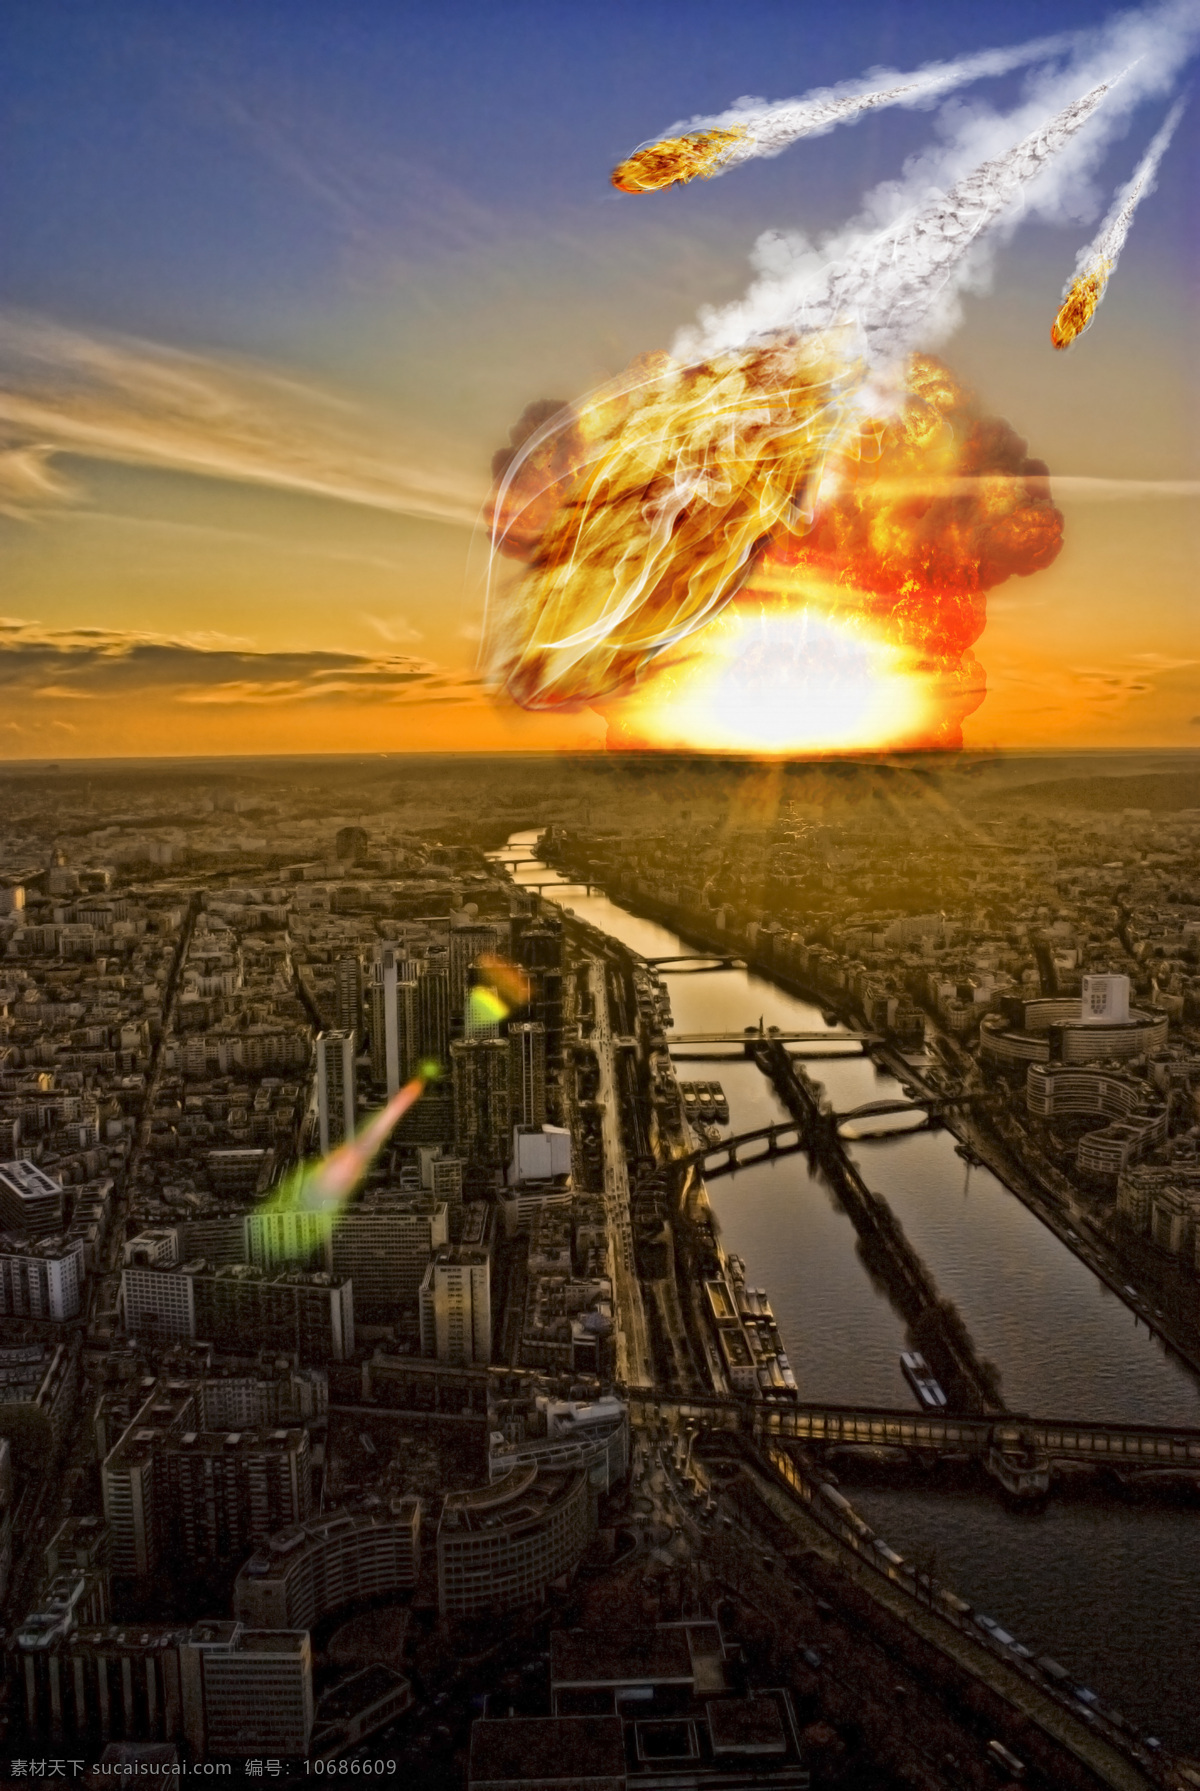 城市 火山 爆炸 核爆炸 核武器 原子弹 氢弹爆炸 世界末日 地球末日 灾难 宇宙太空 其他类别 环境家居